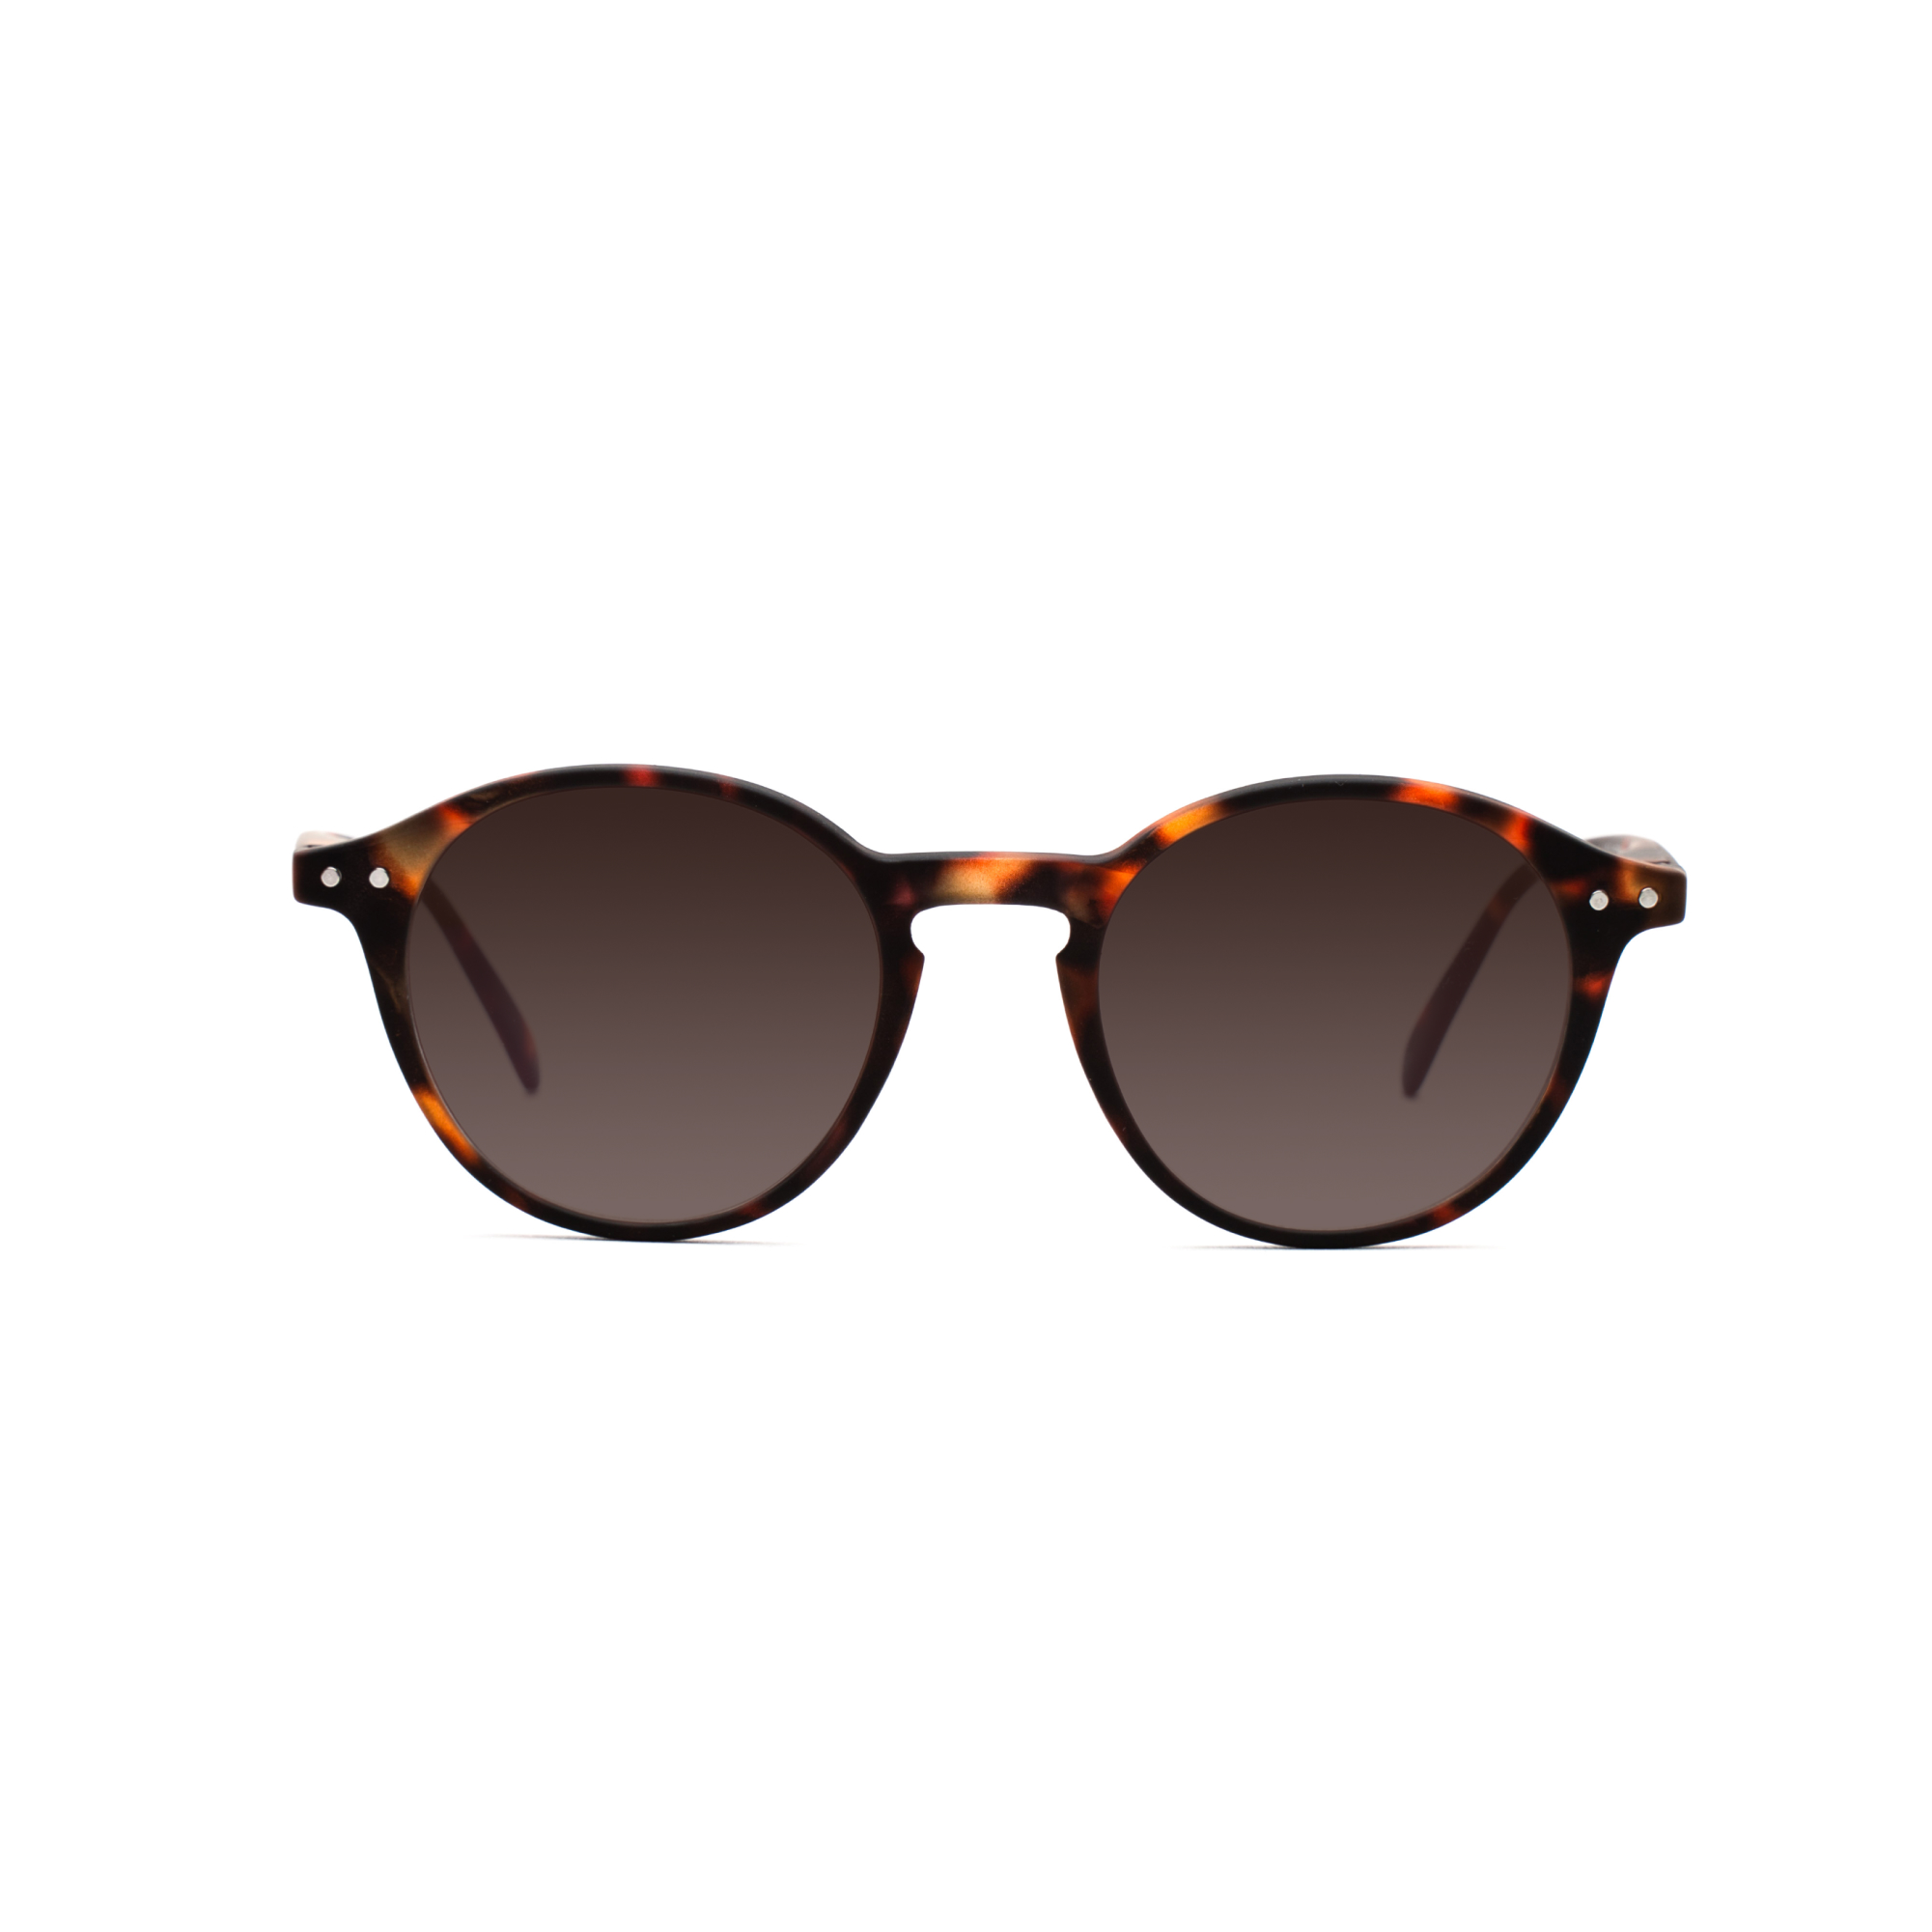 men's polarized sunglasses – Luca Polarised SUN m - Tortoise